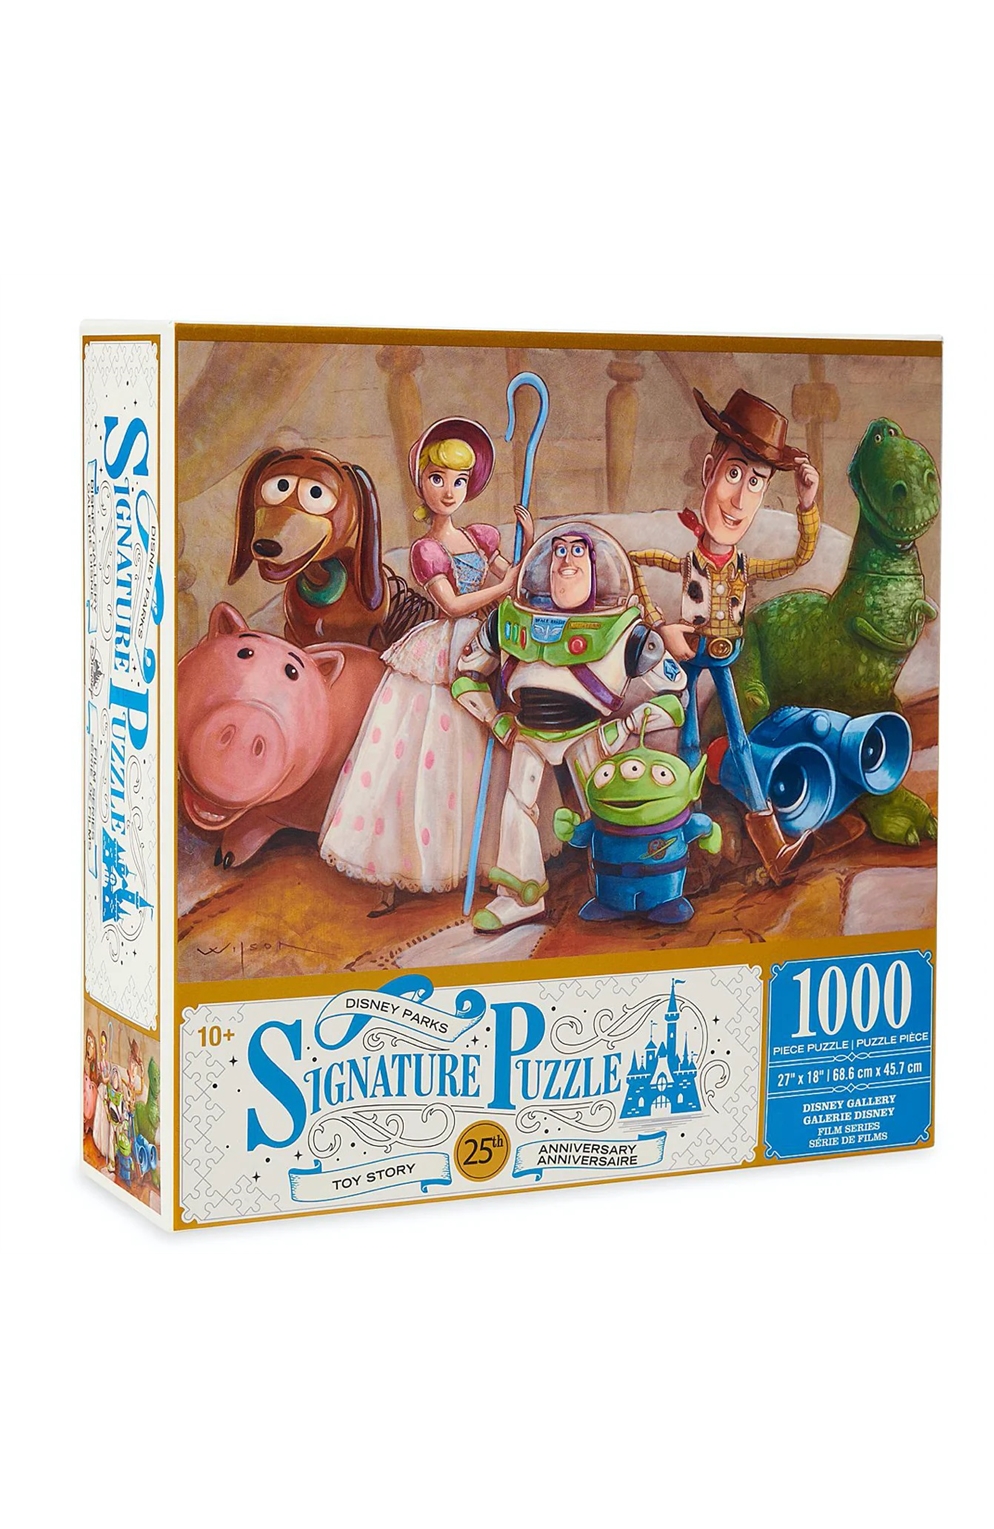 Disney Parks Signature Puzzle: Toy Story 1000 Piece